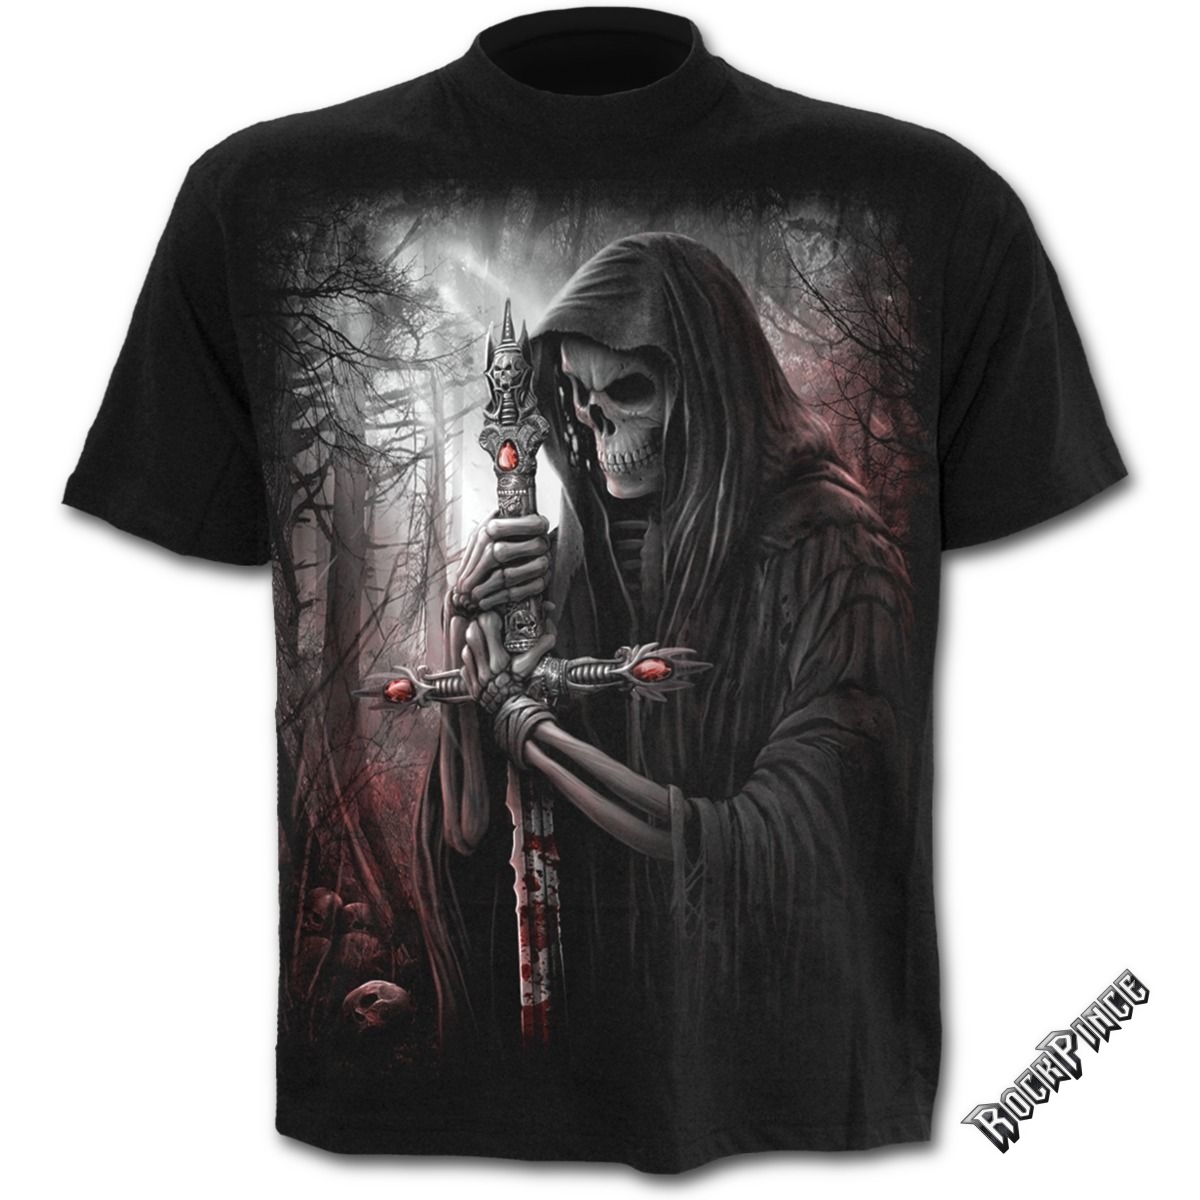 SOUL SEARCHER - T-Shirt Black - D050M101